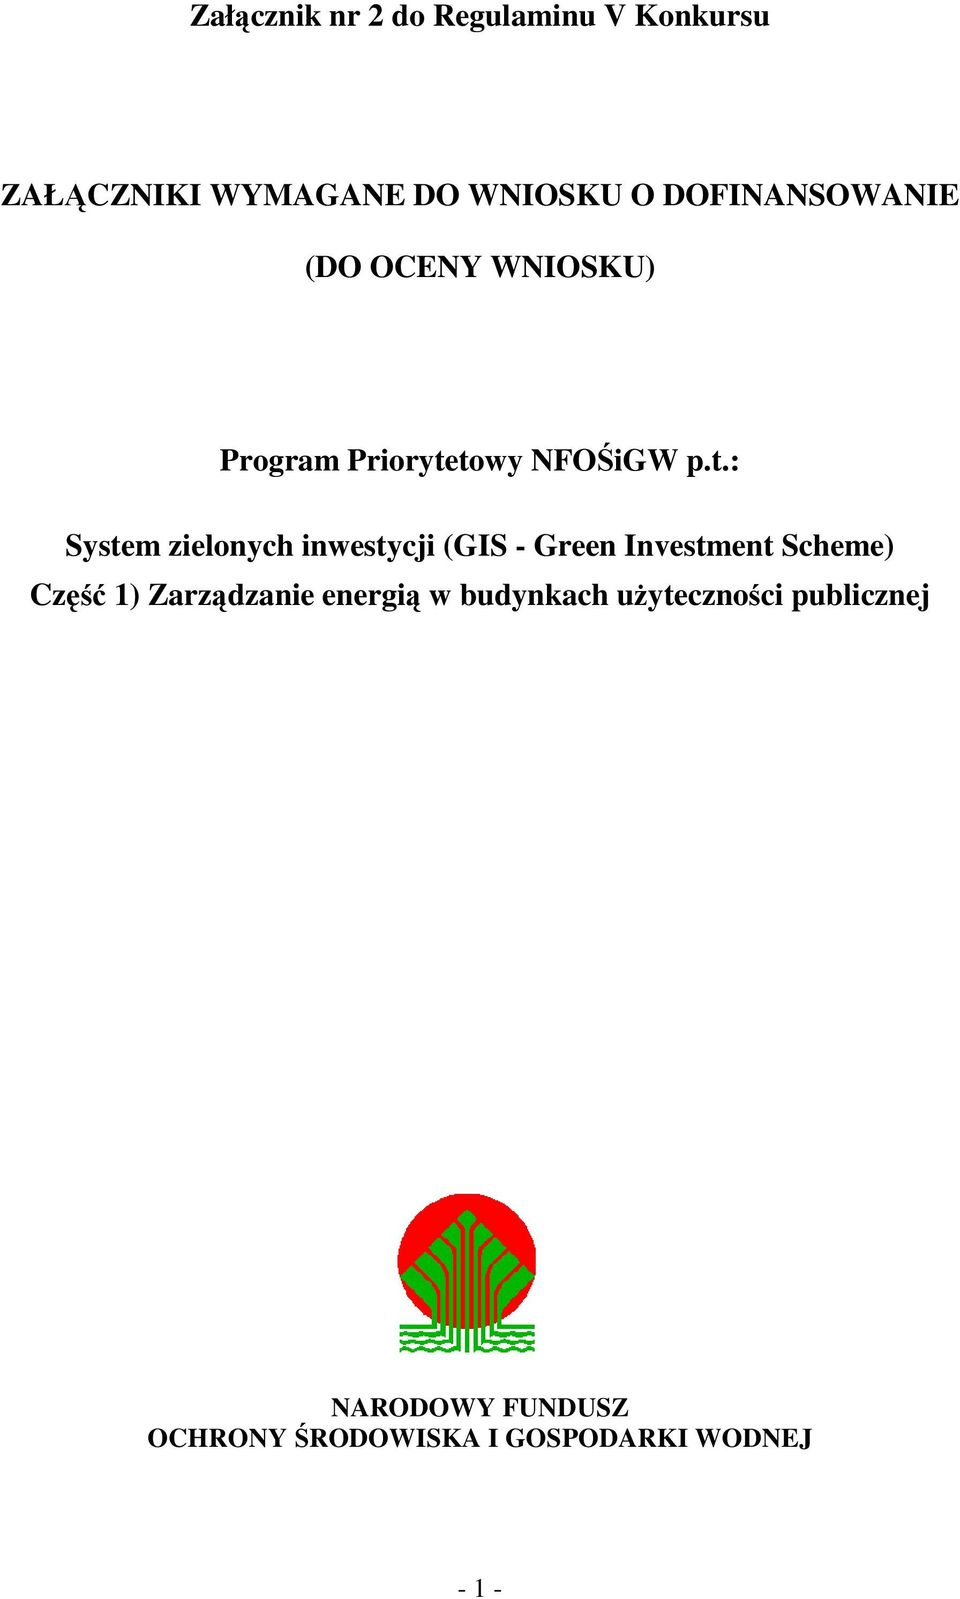 towy NFOŚiGW p.t.: System zielonych inwestycji (GIS - Green Investment Scheme)